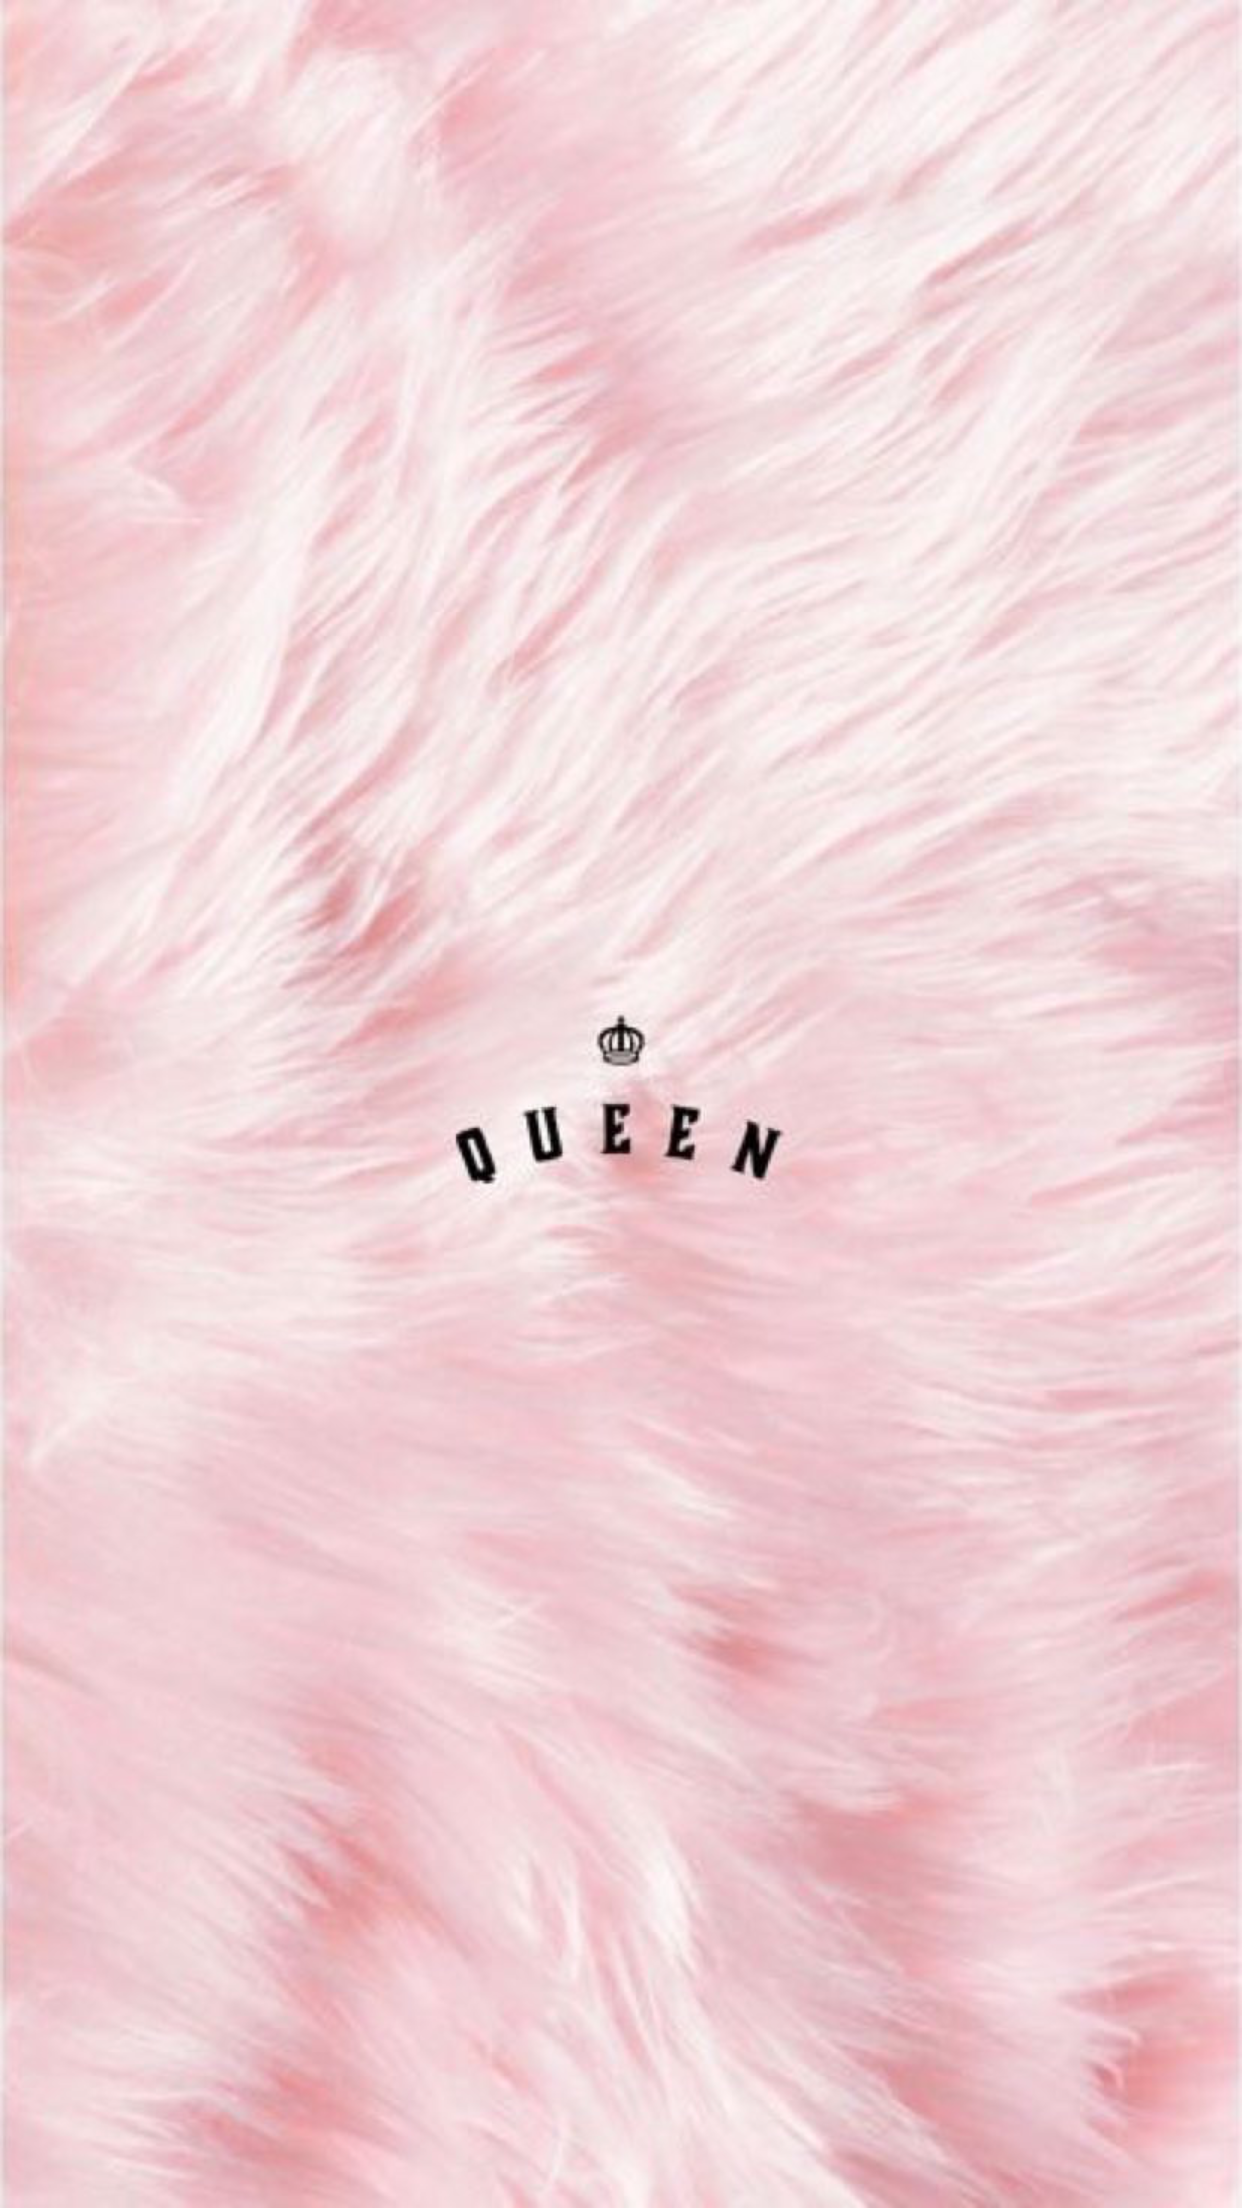 queen #wallpaper #wallpaper pin:. Queens